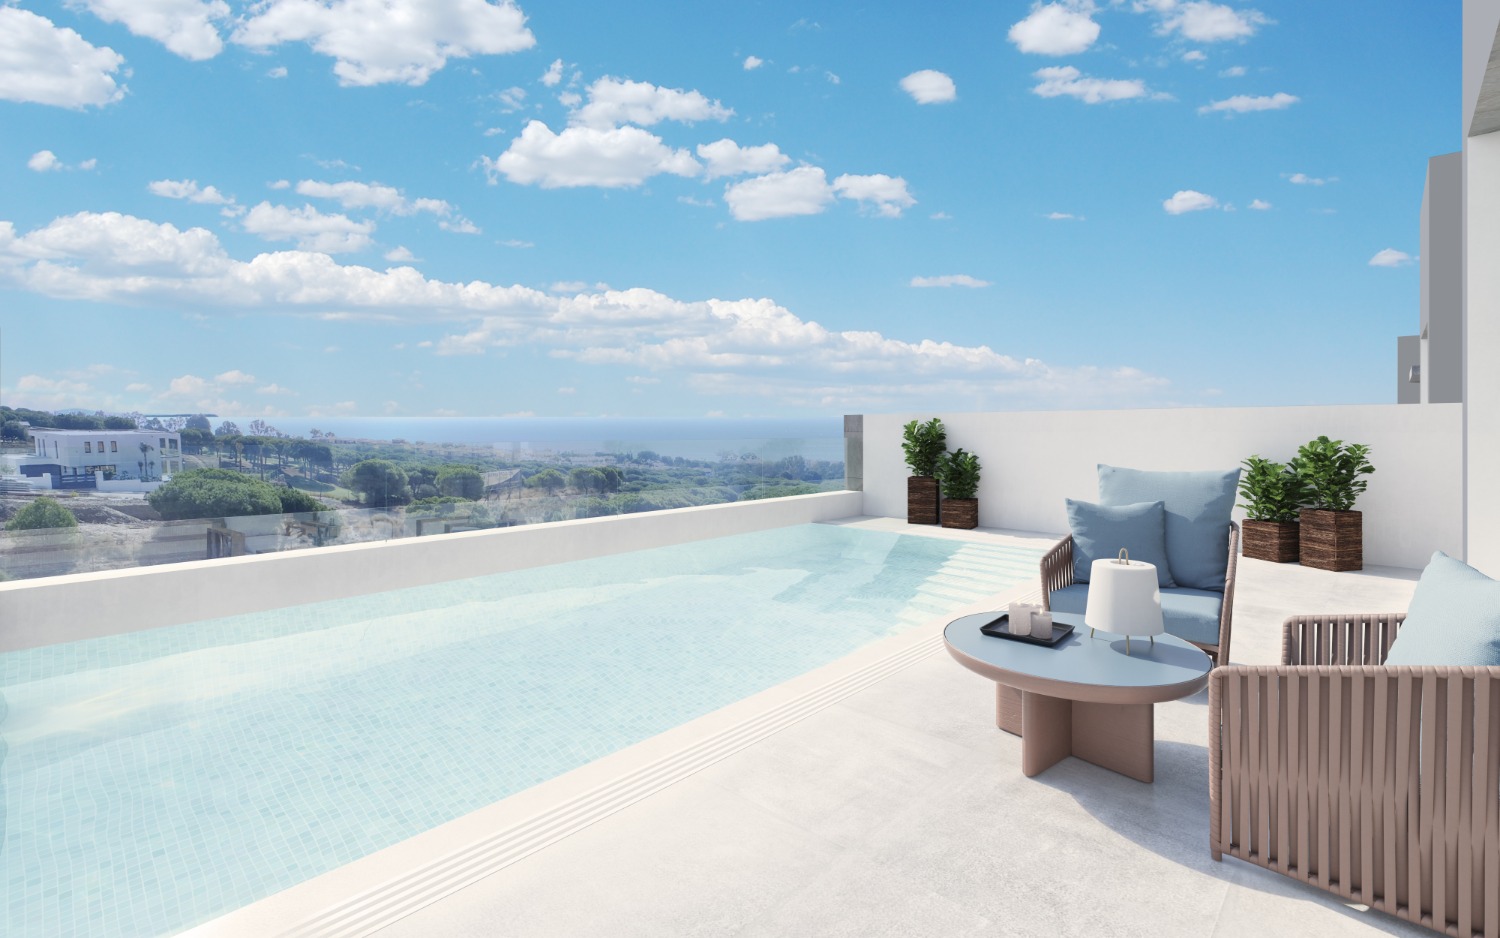 Vistas al mar, 3 dormitorios independientes y adosados con piscina privada. Precio de venta desde 689.000 euros. Cabopino.